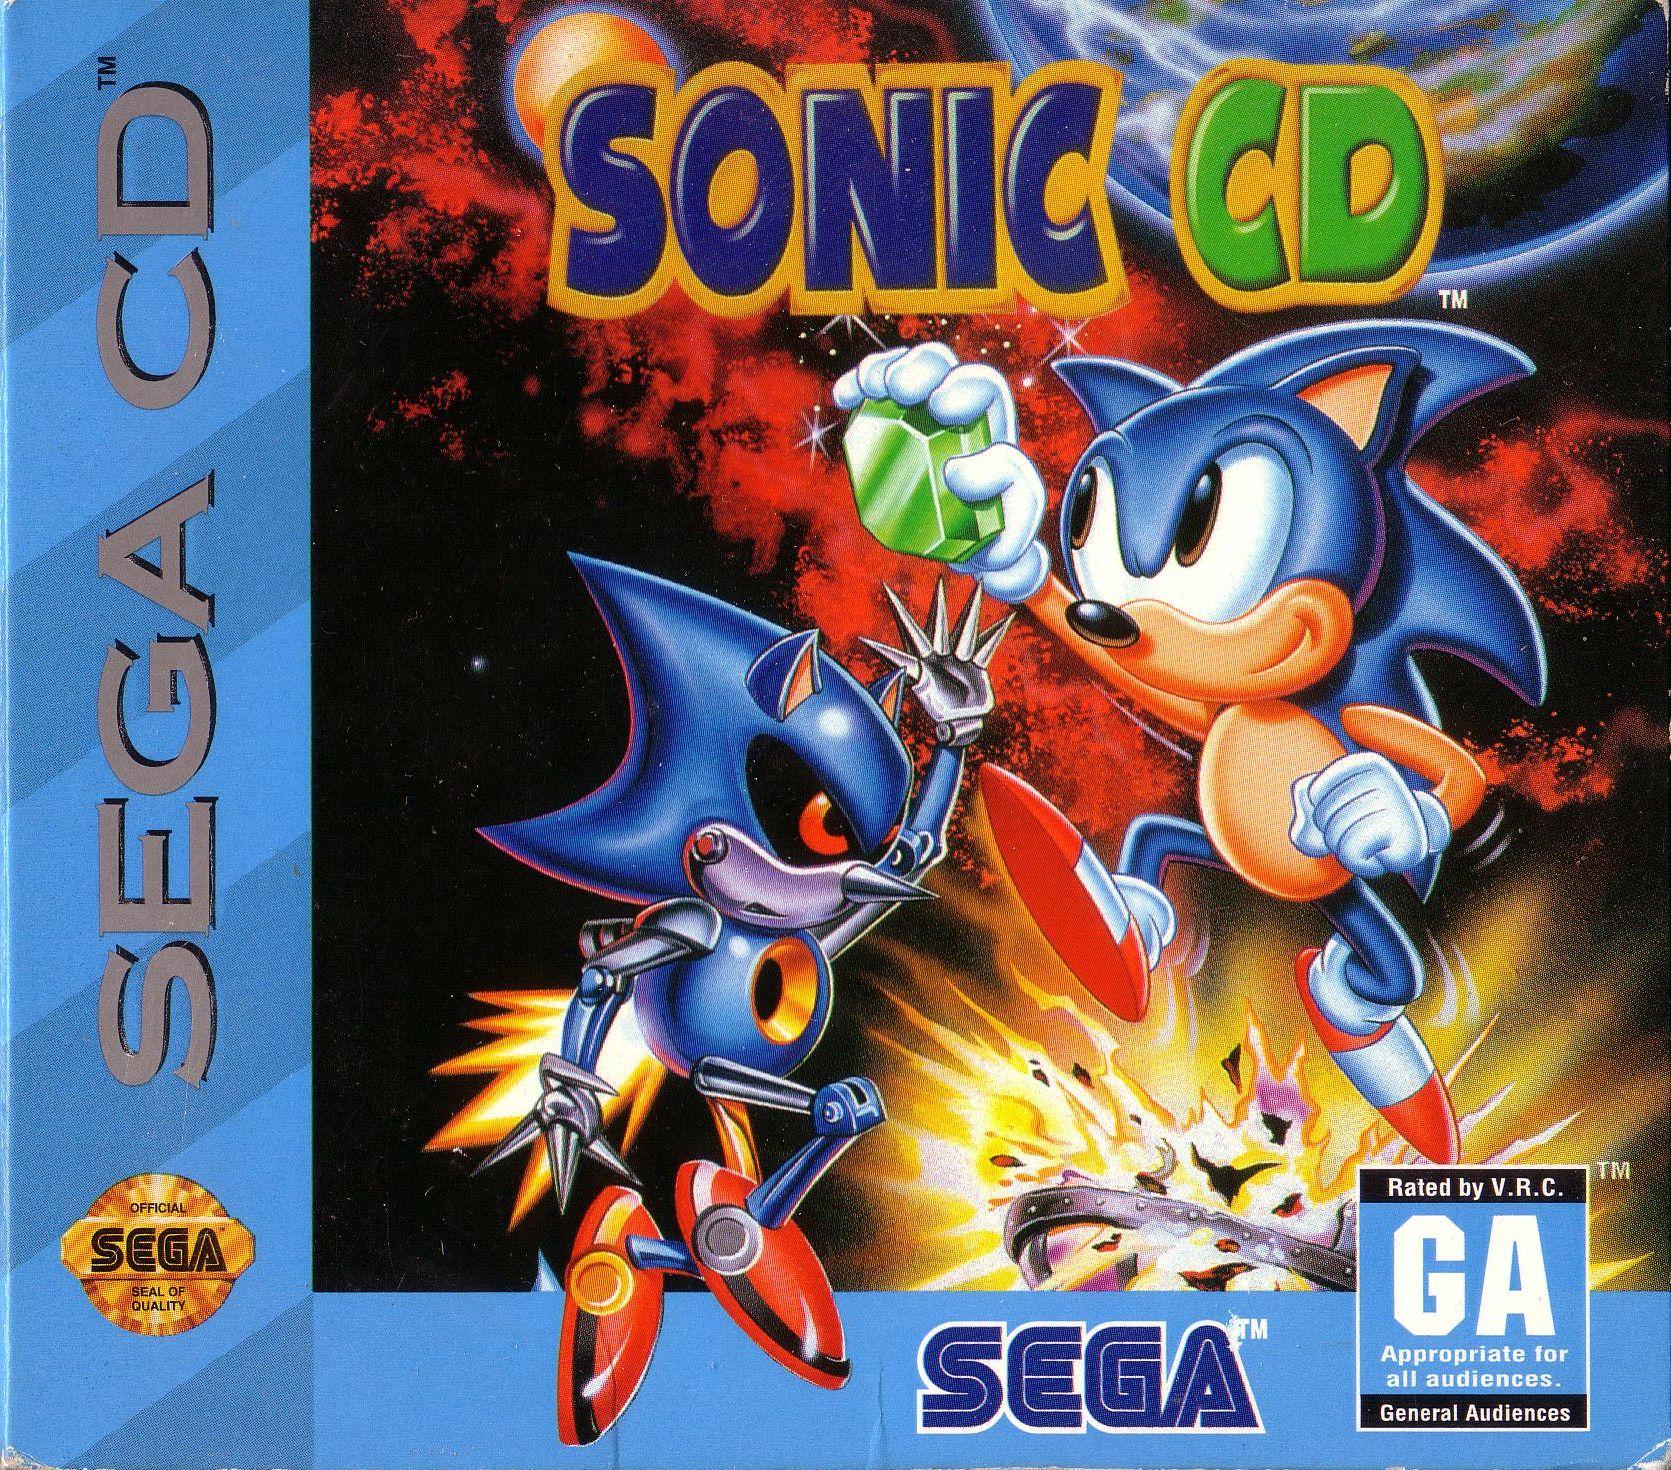 Sonic jp. Sonic Sony PLAYSTATION 1. Sonic CD Sega CD обложка. Компакт-диск Sonic the Hedgehog (1993) (Sega) (jp). Sonic CD ps3.